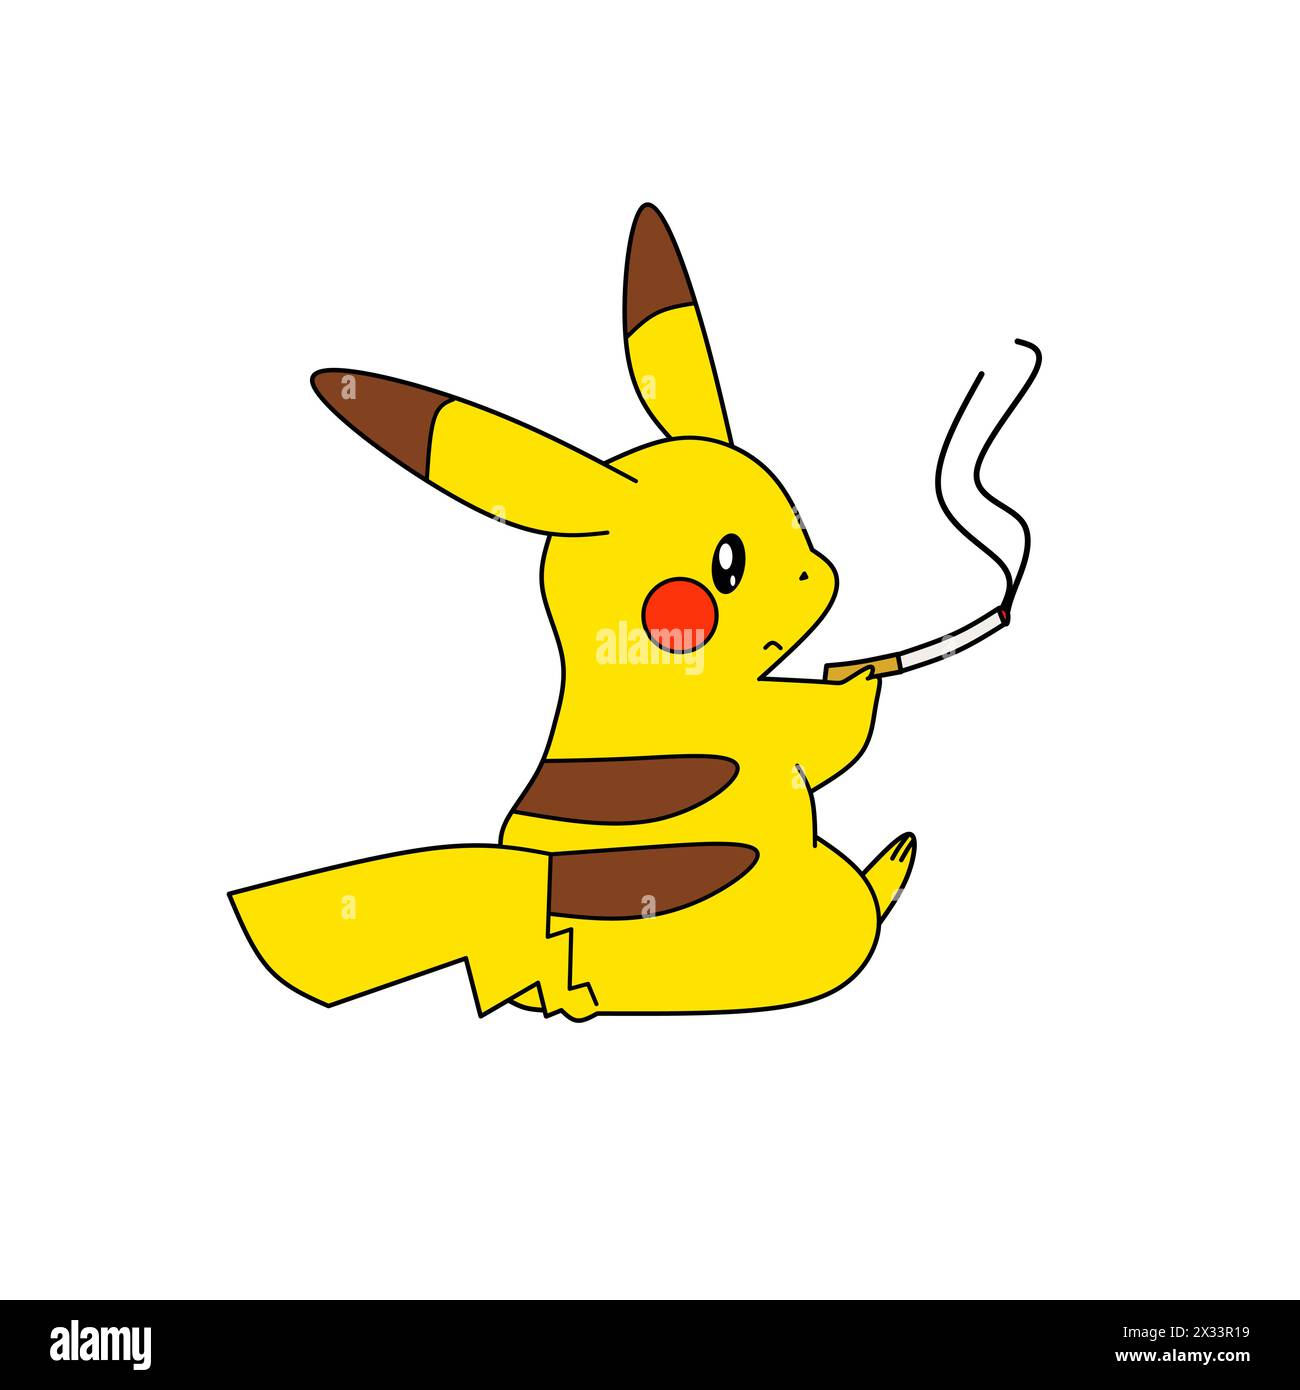 Personnages Pokémon pikachu Smooking illustration vectorielle d'animation de dessin animé Illustration de Vecteur